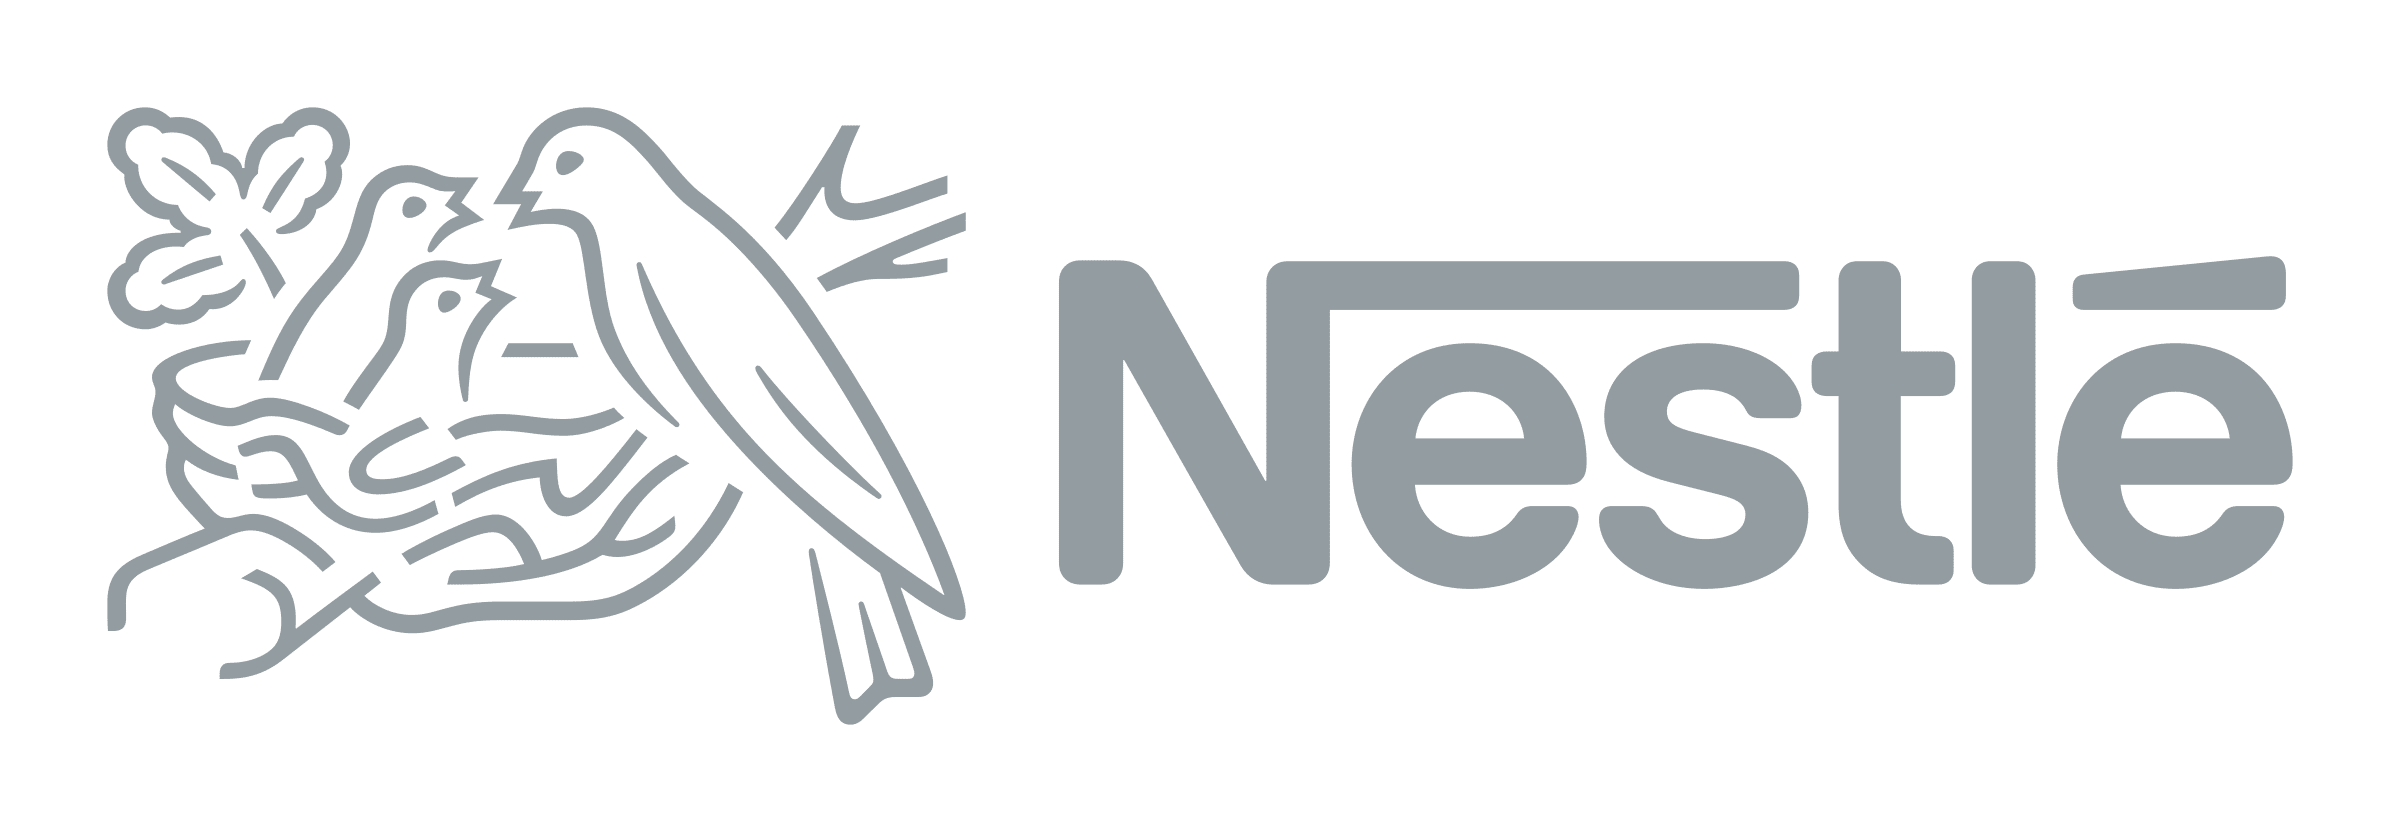 nestle-logo-png-transparent